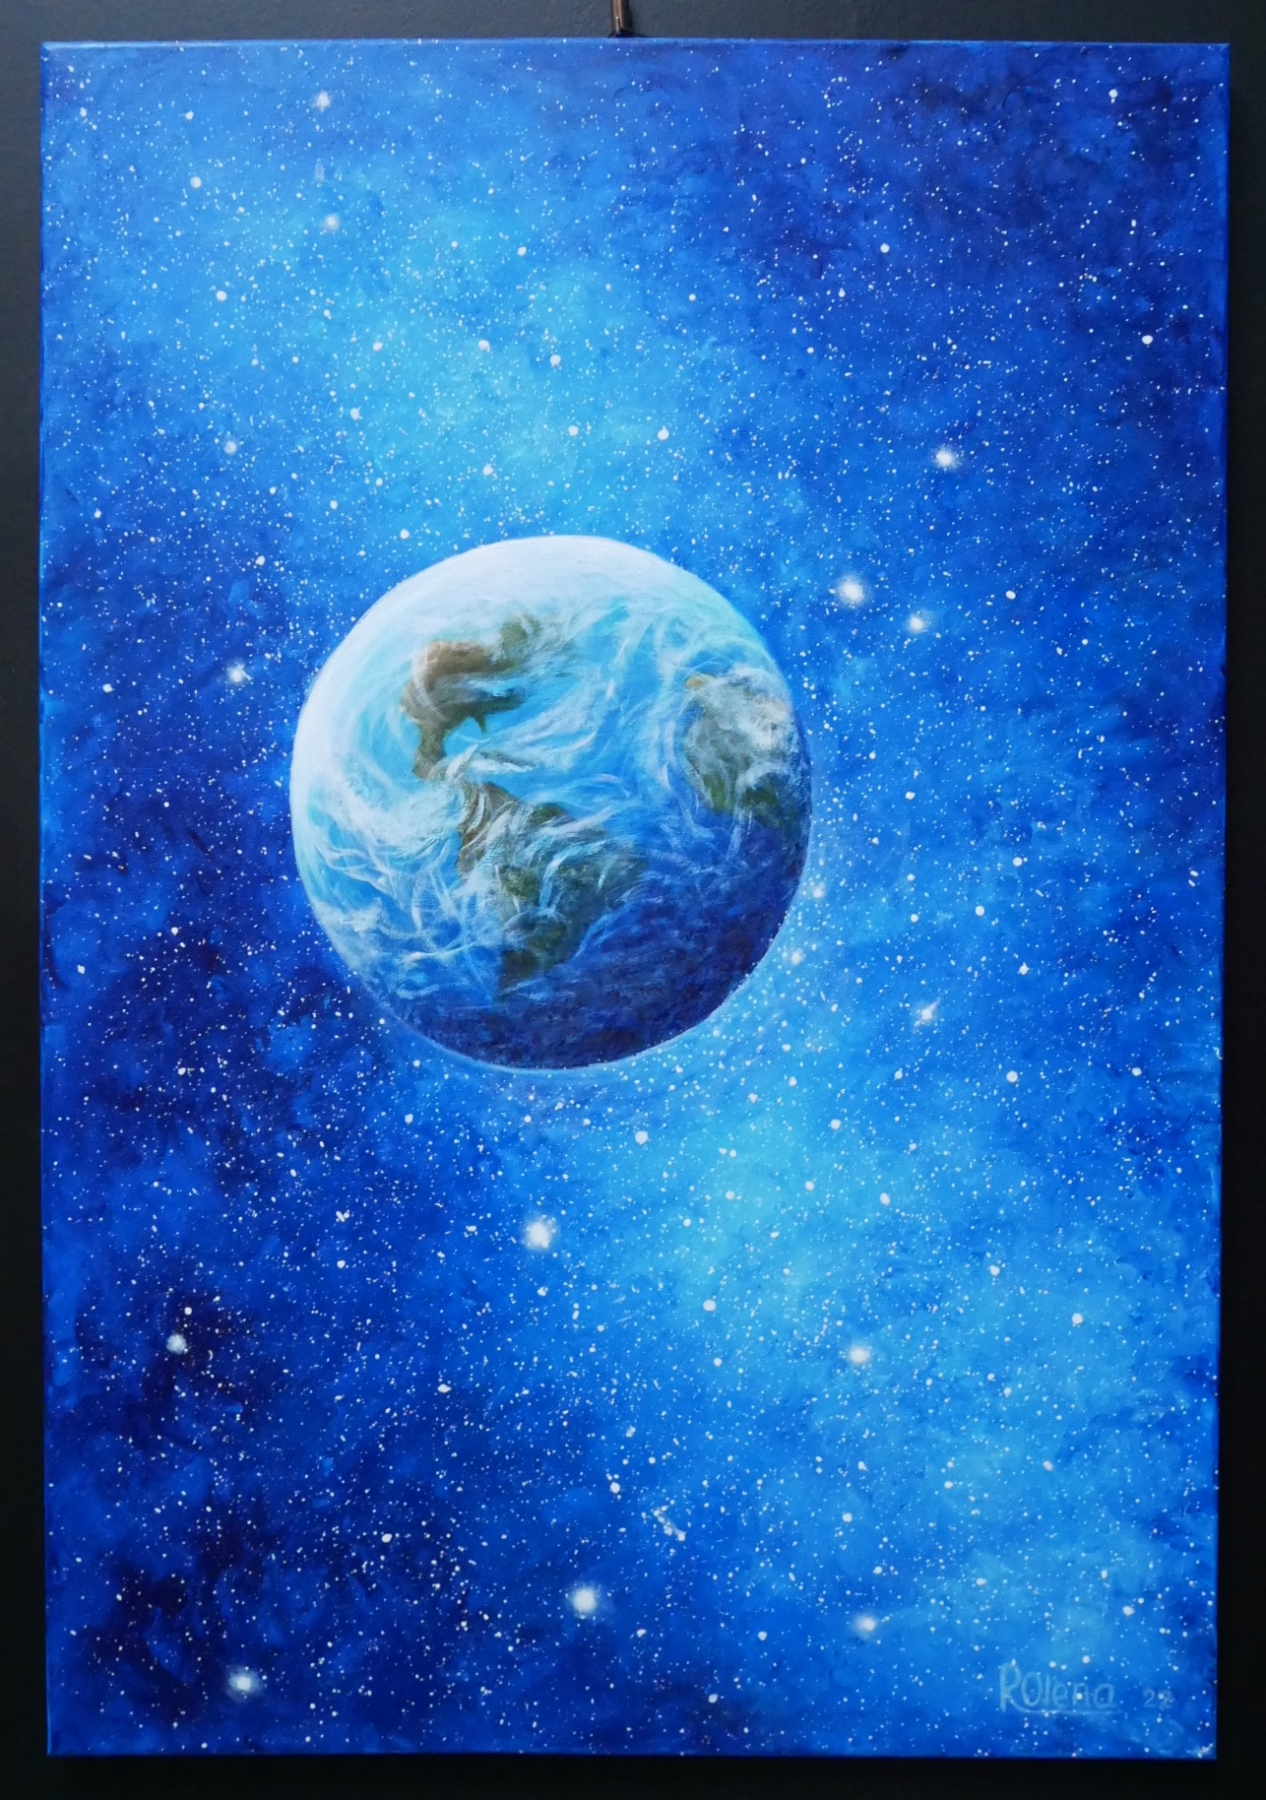 Obraz Oleny Radczenko przedstawiający Ziemię widzianą z kosmosu